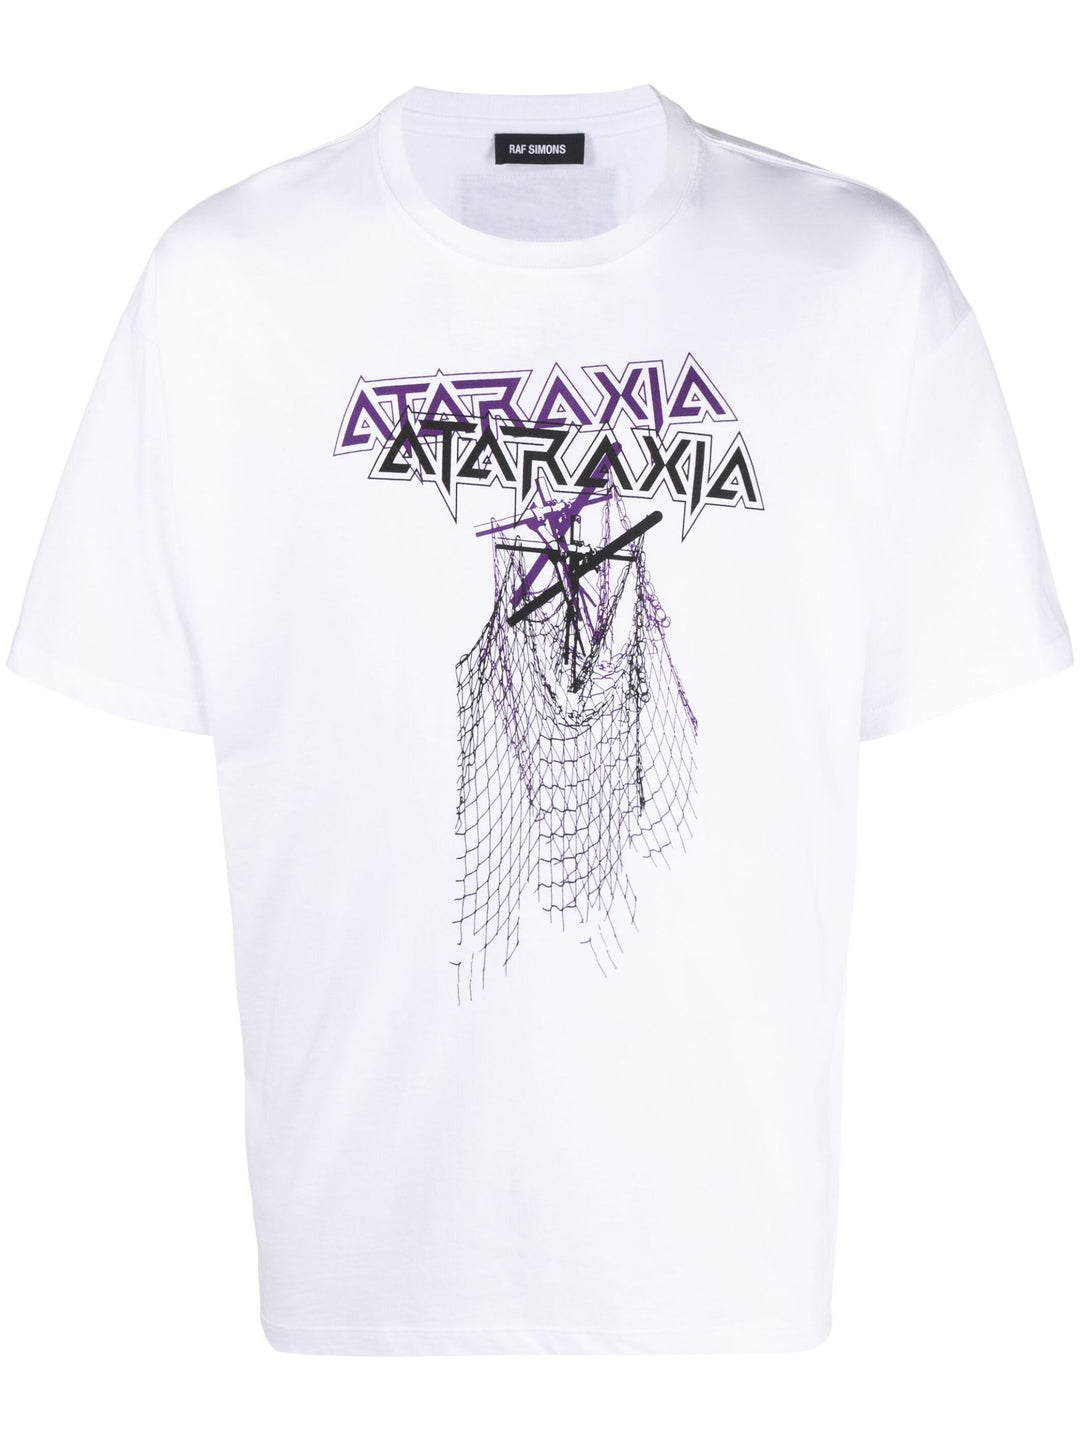 Big Fit T-Shirt Ataraxia